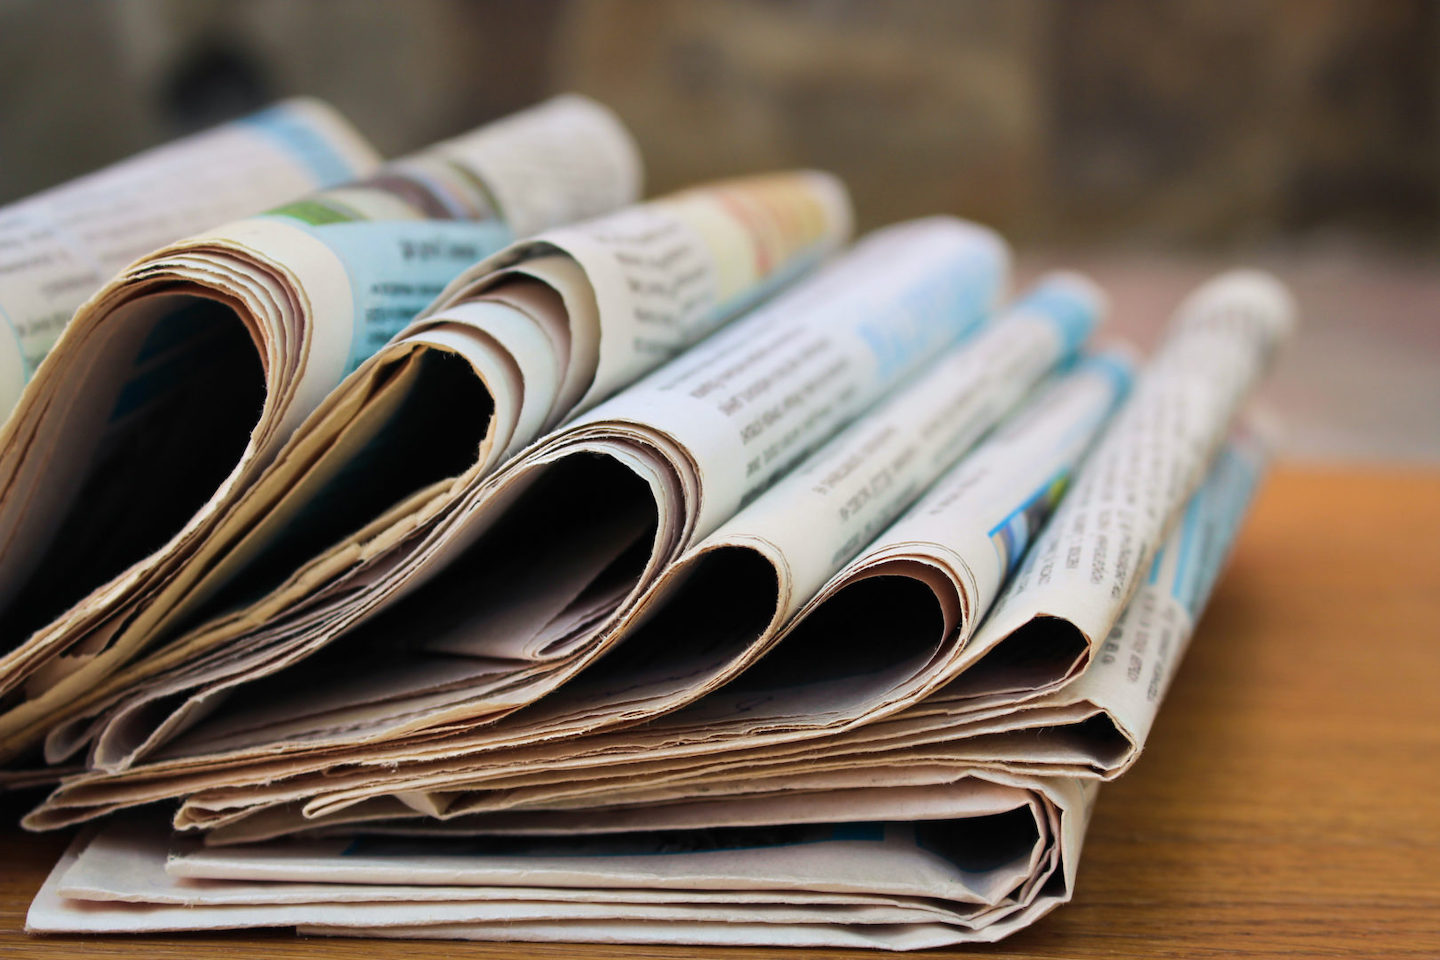 Een op drie bezoekt krantensites